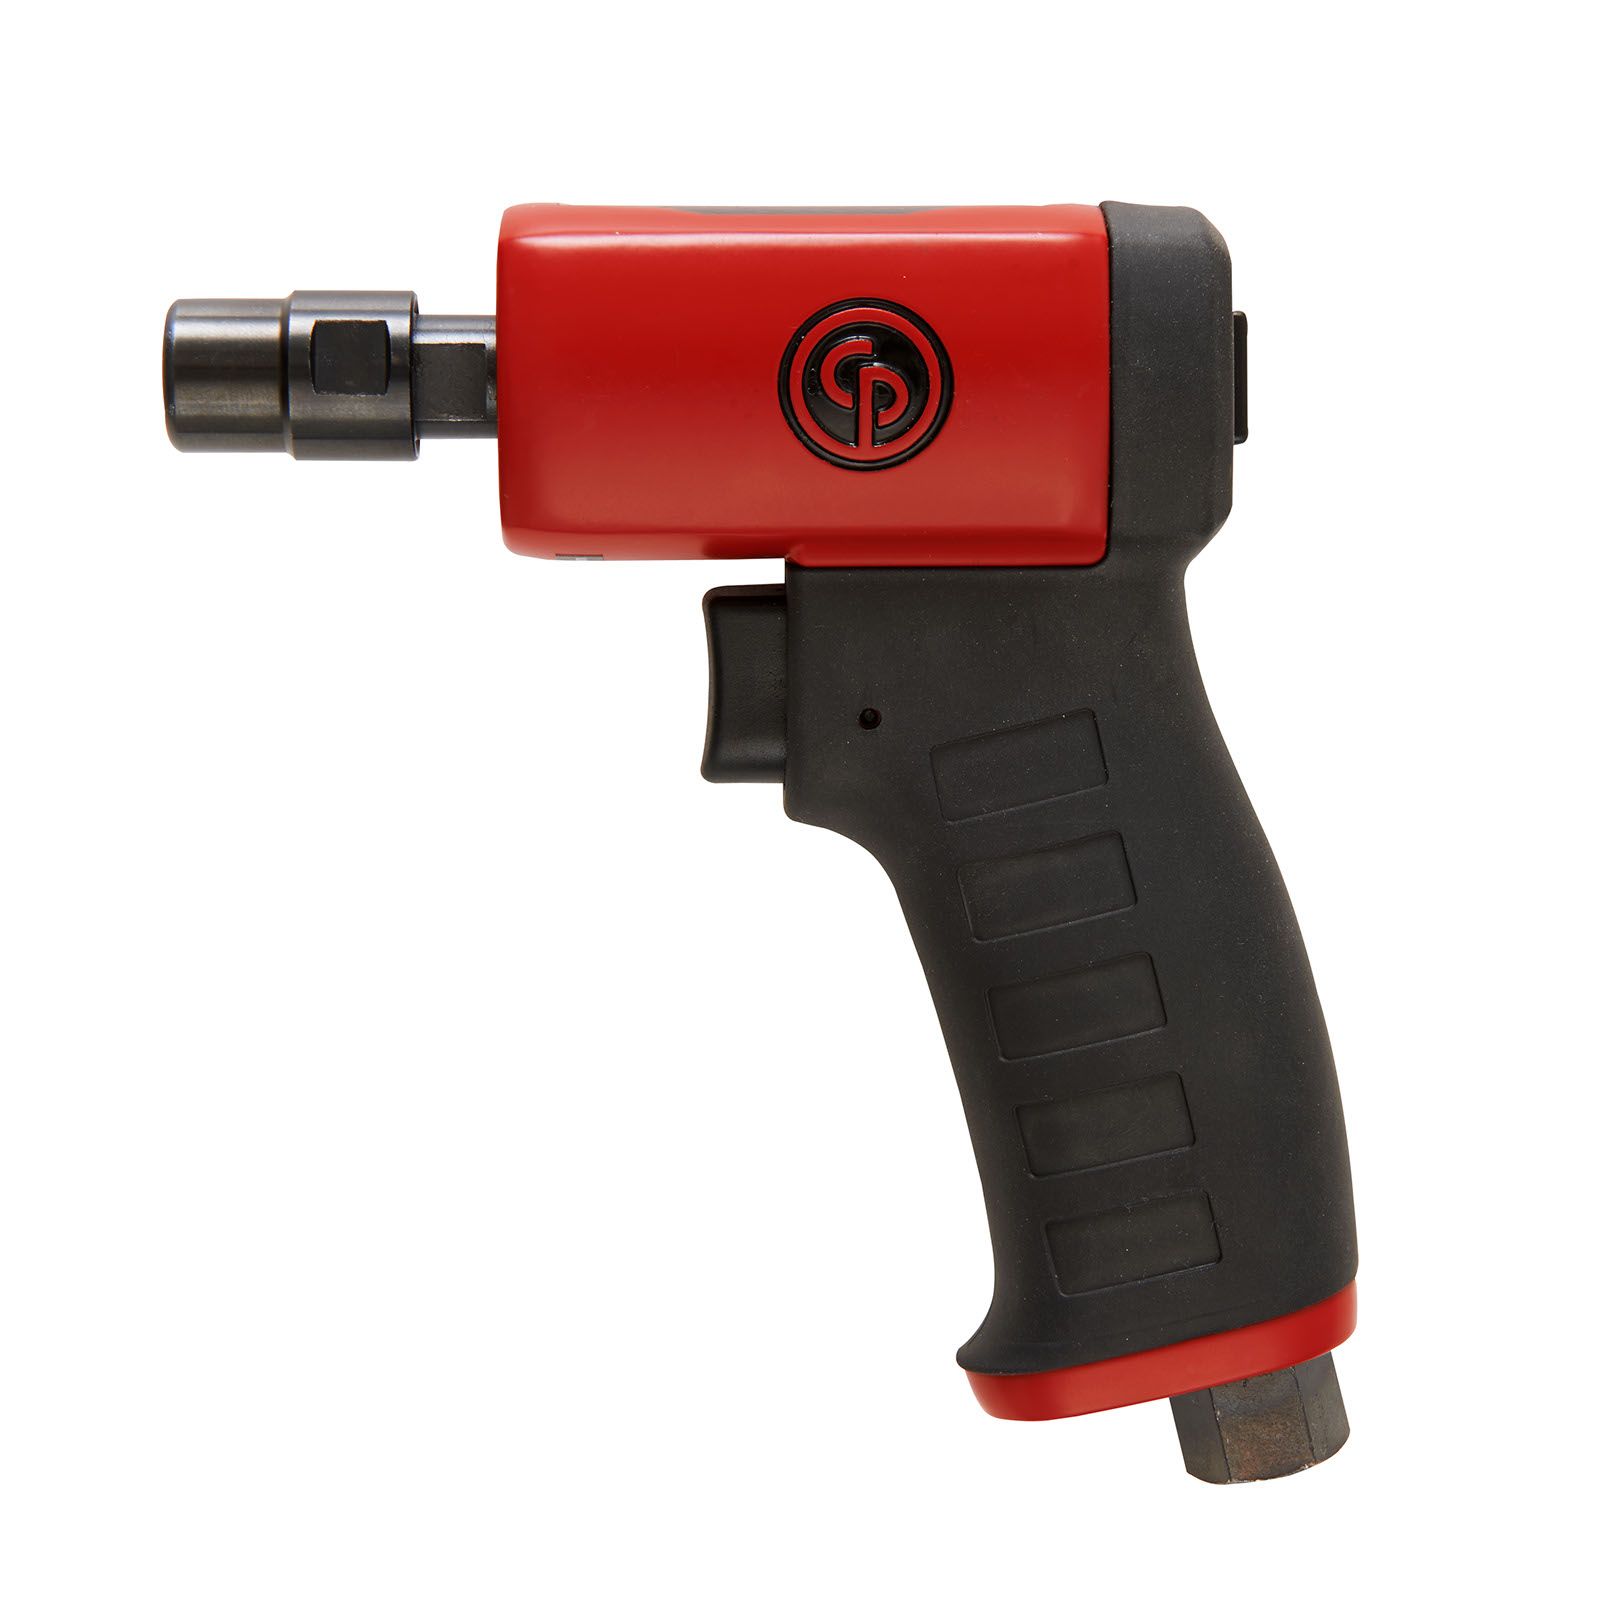 CP9107 Series - Pistol die grinder ürün resmi